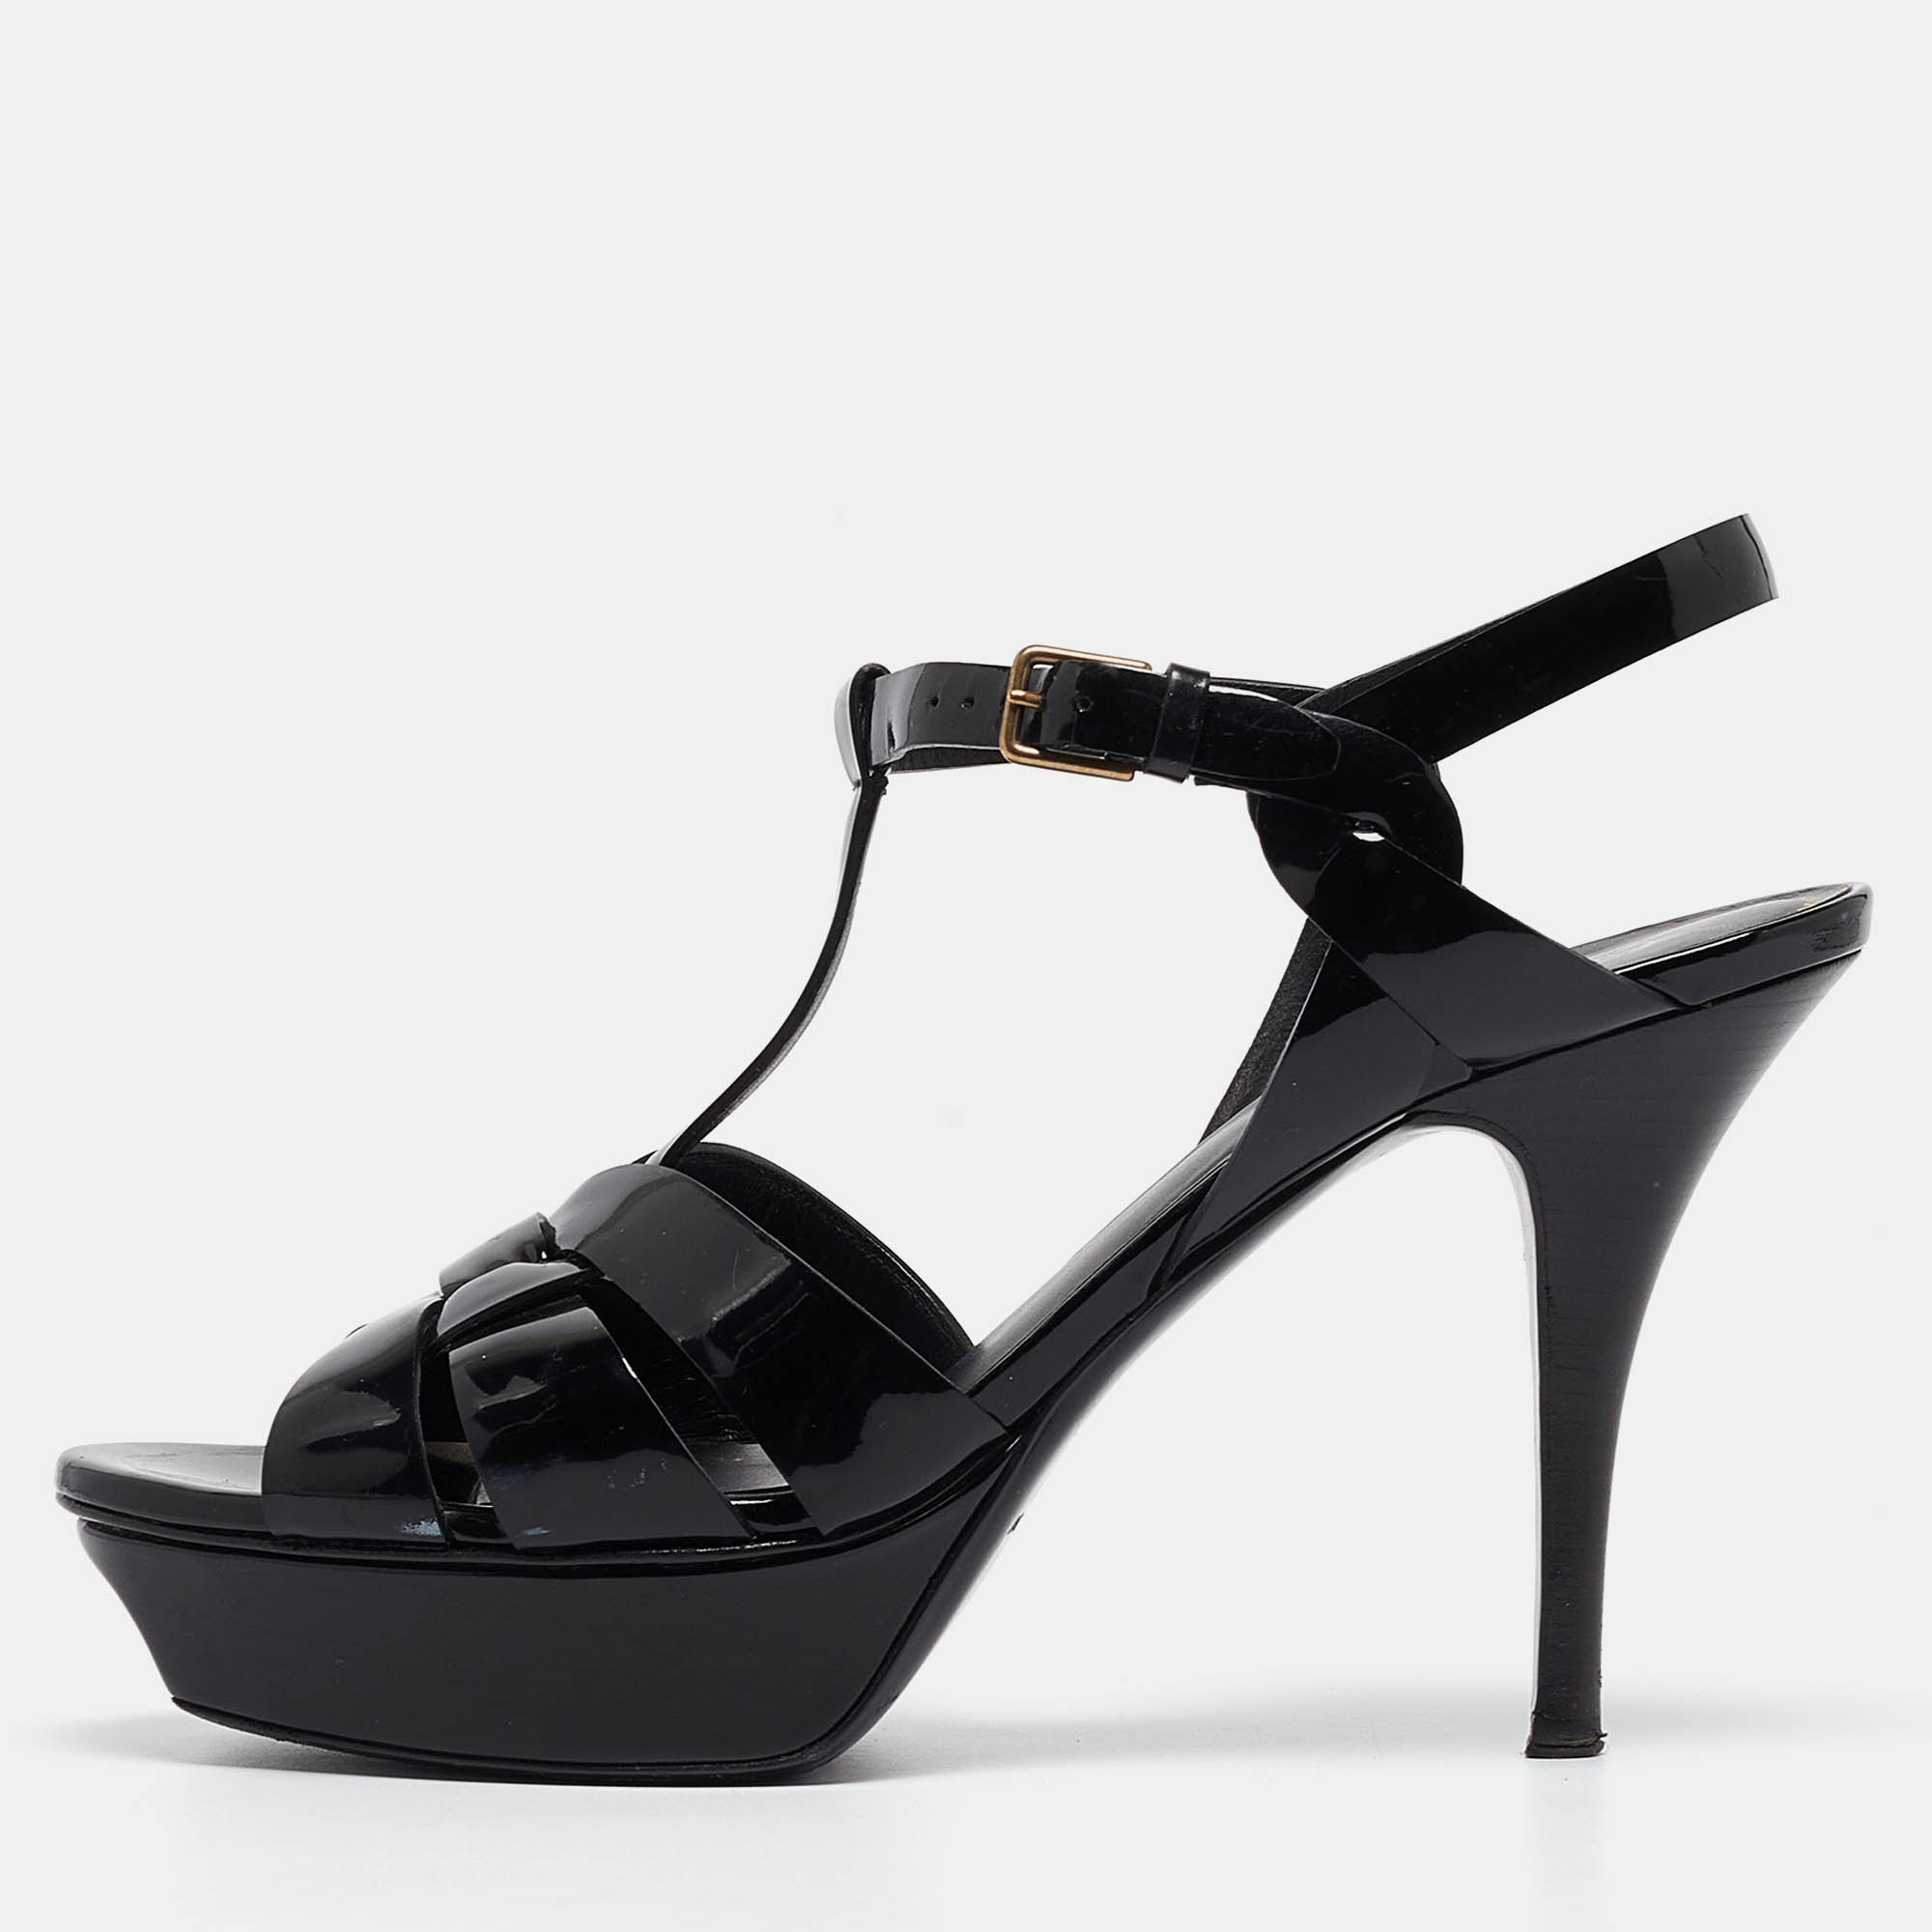 Saint laurent paris saint laurent black patent leather tribute sandals size 39